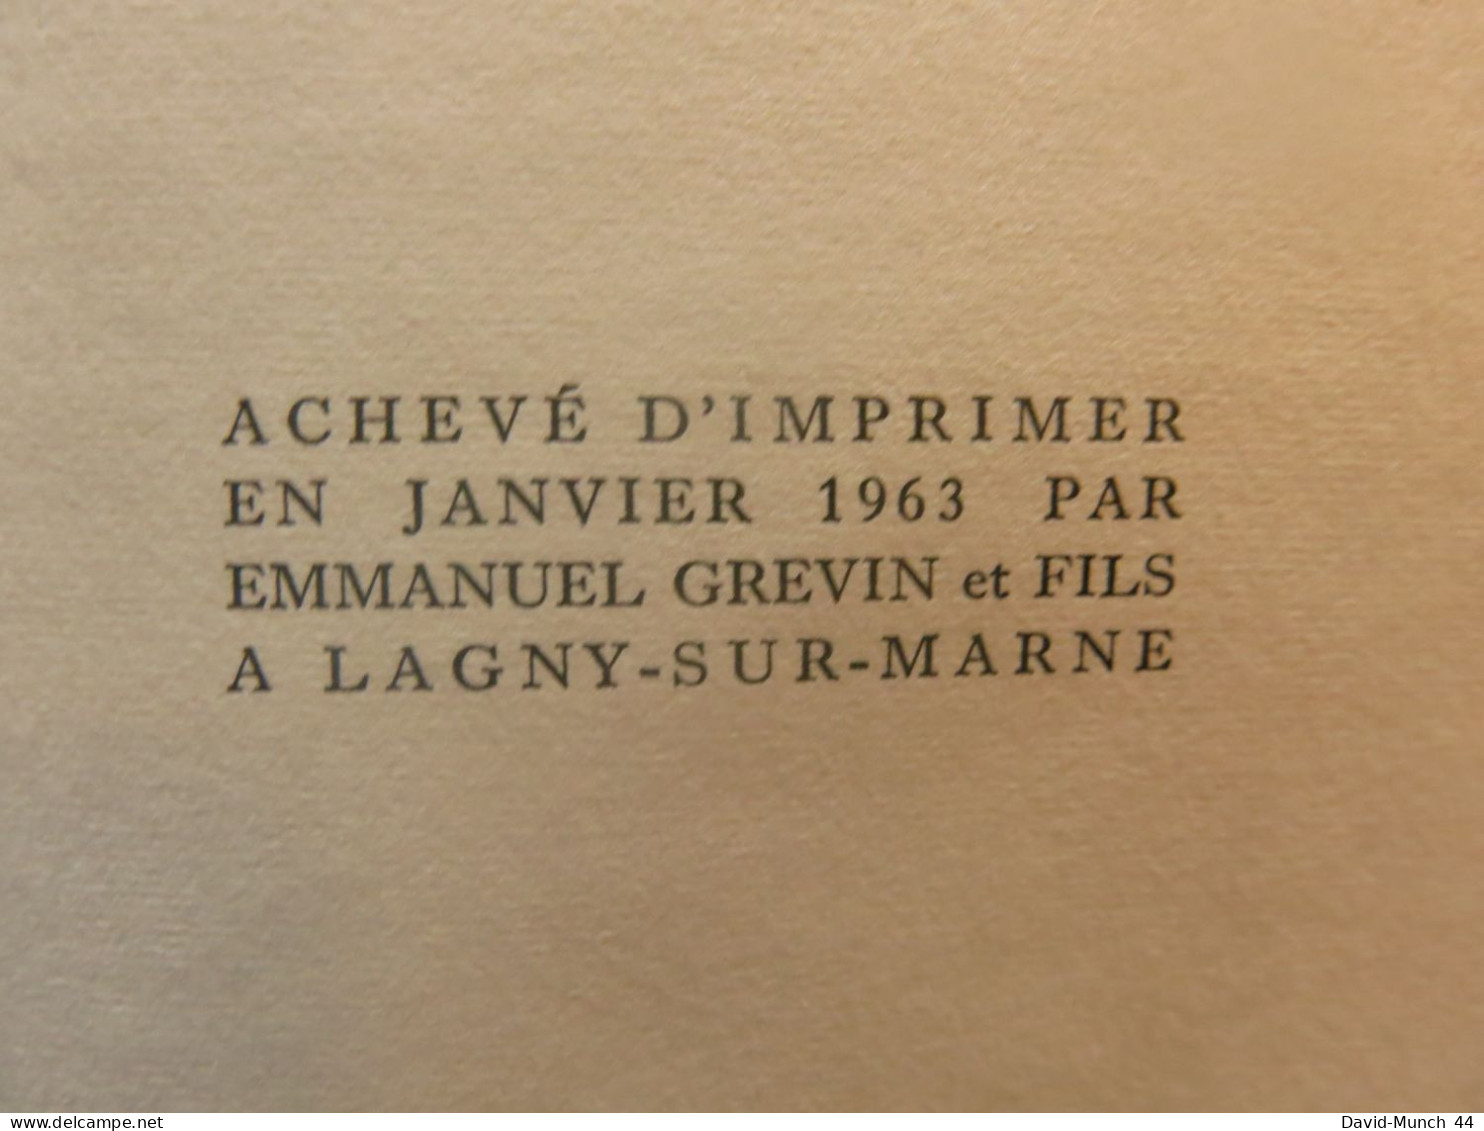 Lady Chatterley, première version de D.H. Lawrence. Editions Albin Michel, "Les grandes traductions". 1963